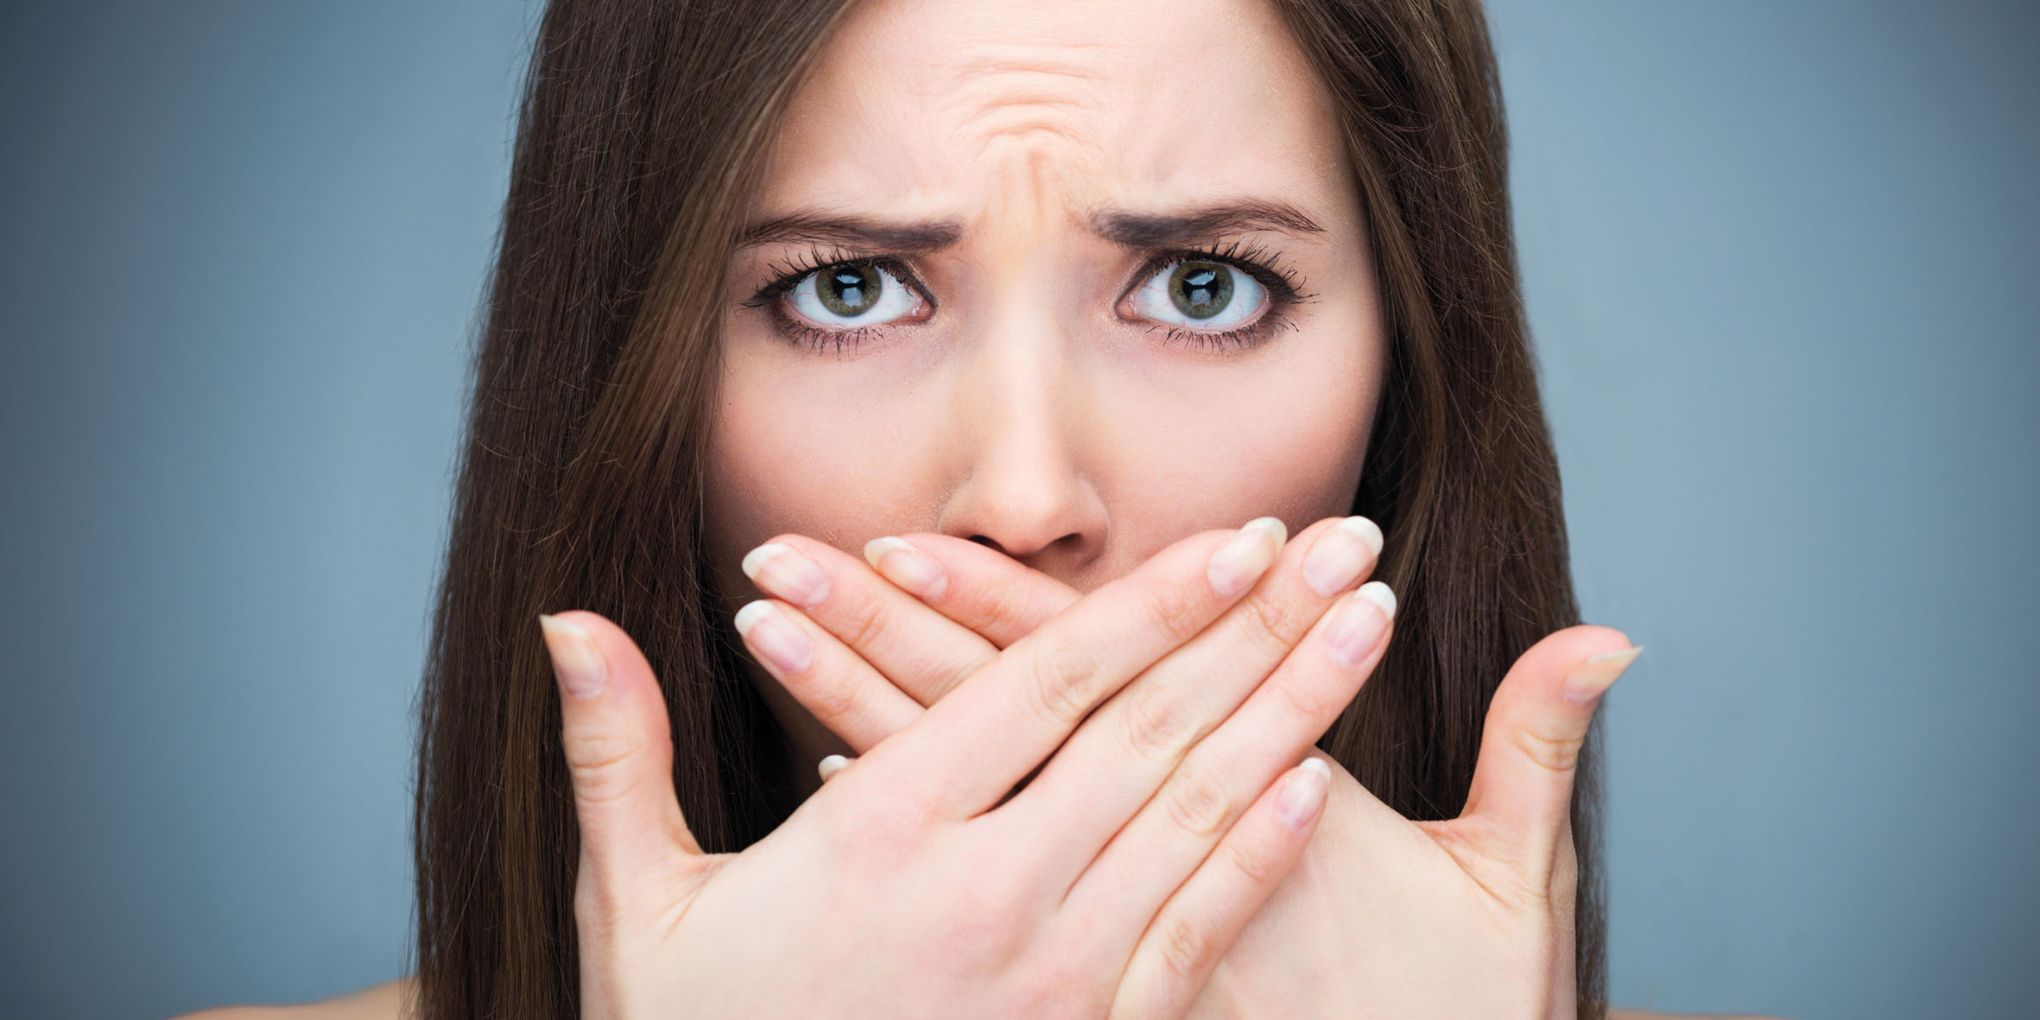 neugodan zadah žena drži obje ruke na ustima